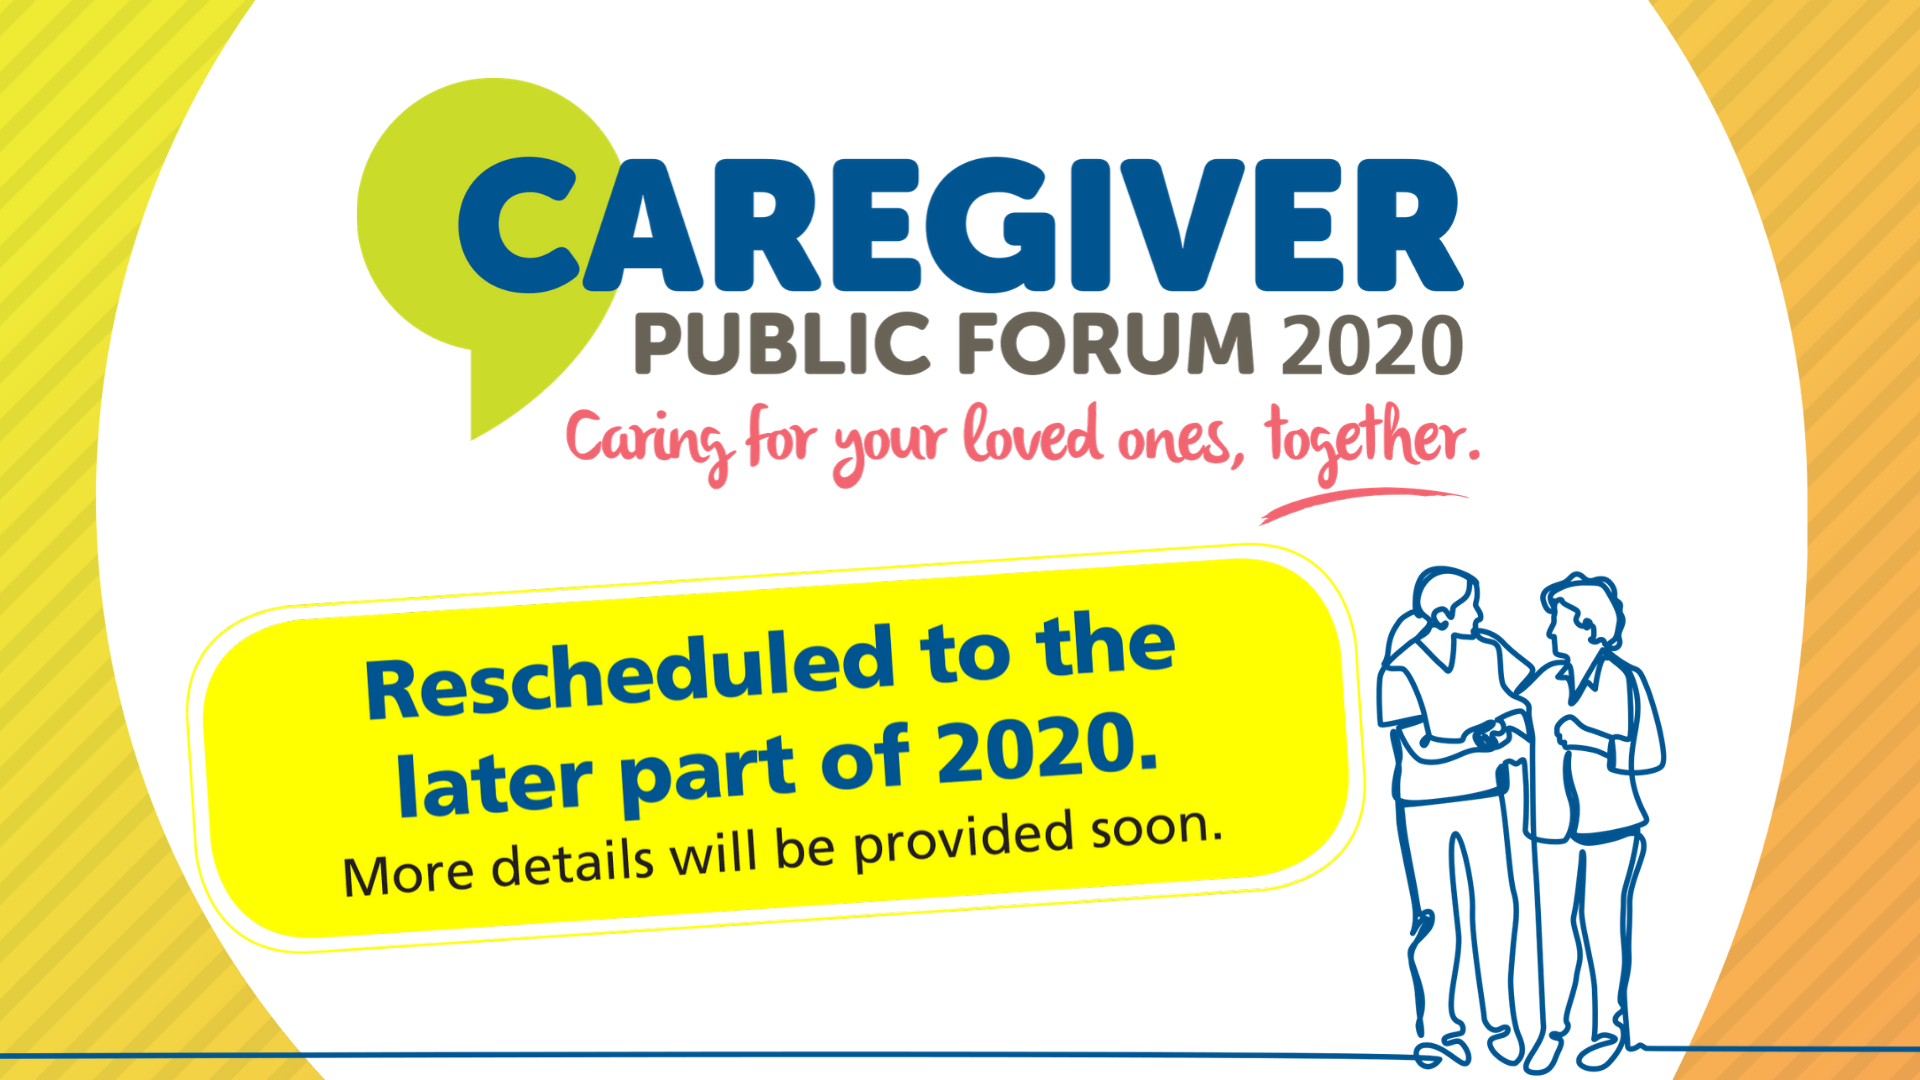 Caregiver Public Forum 2020 Postponed